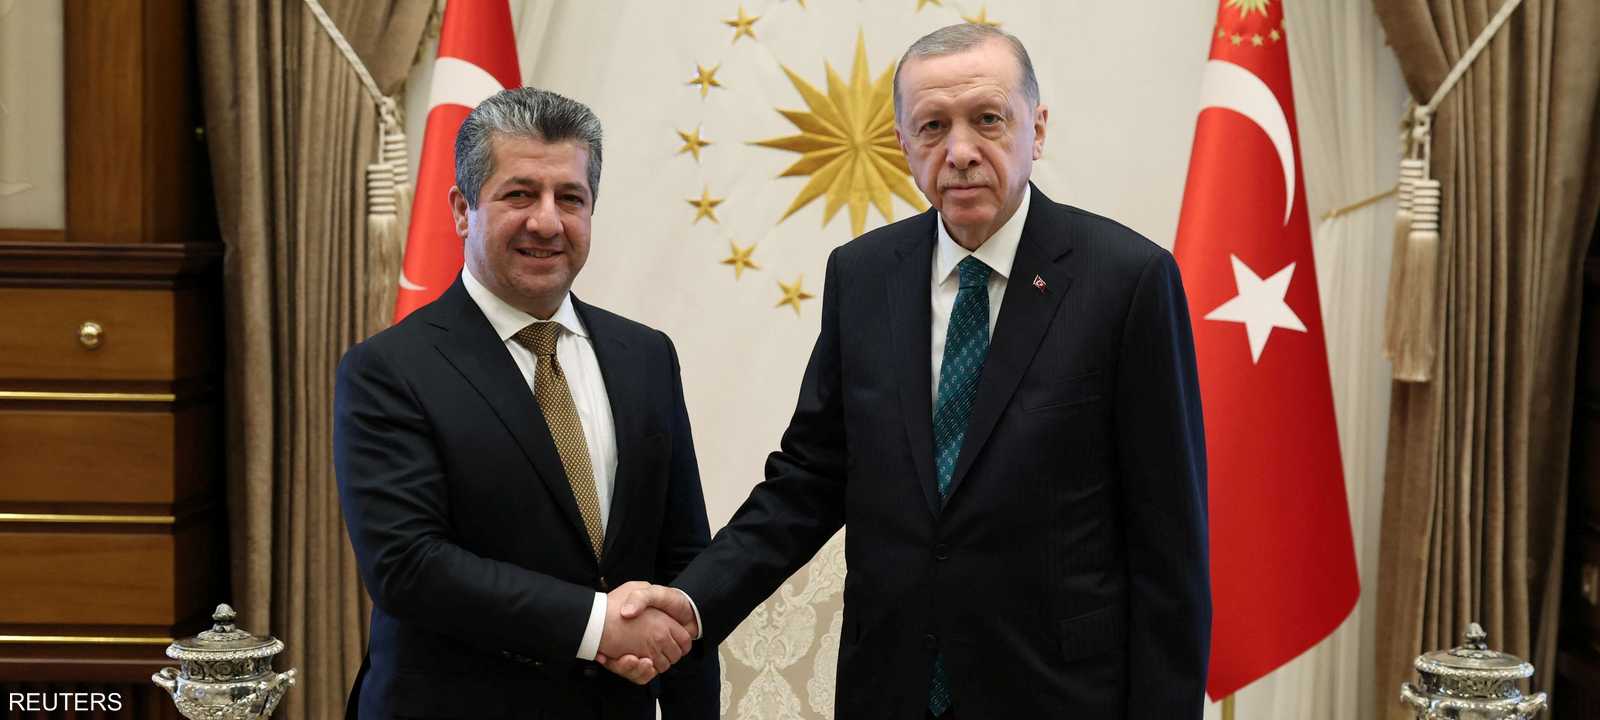 الرئيس التركي ورئيس وزراء حكومة كردستان العراق